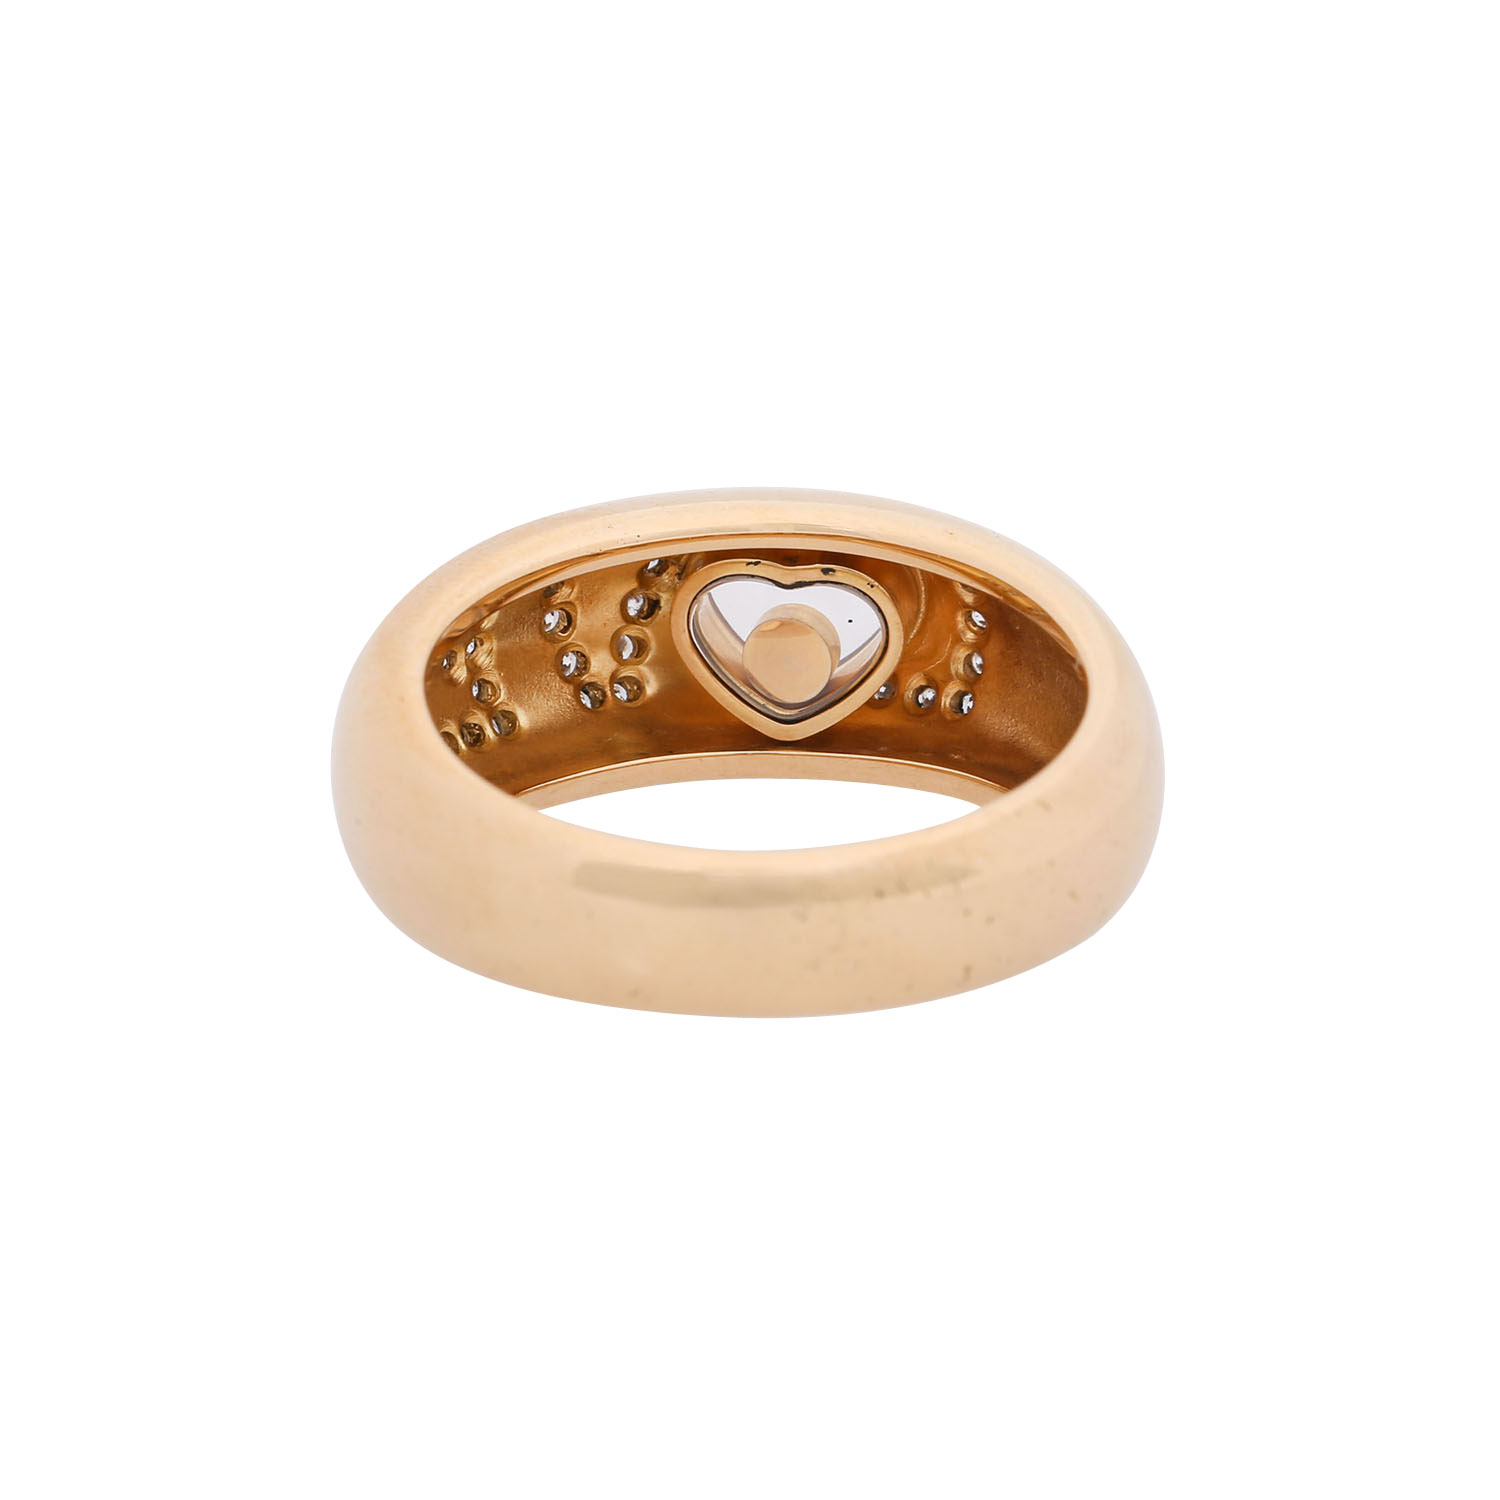 CHOPARD Ring "LOVE" mit Brillanten zus. ca. 0,3 ct, - Image 3 of 4